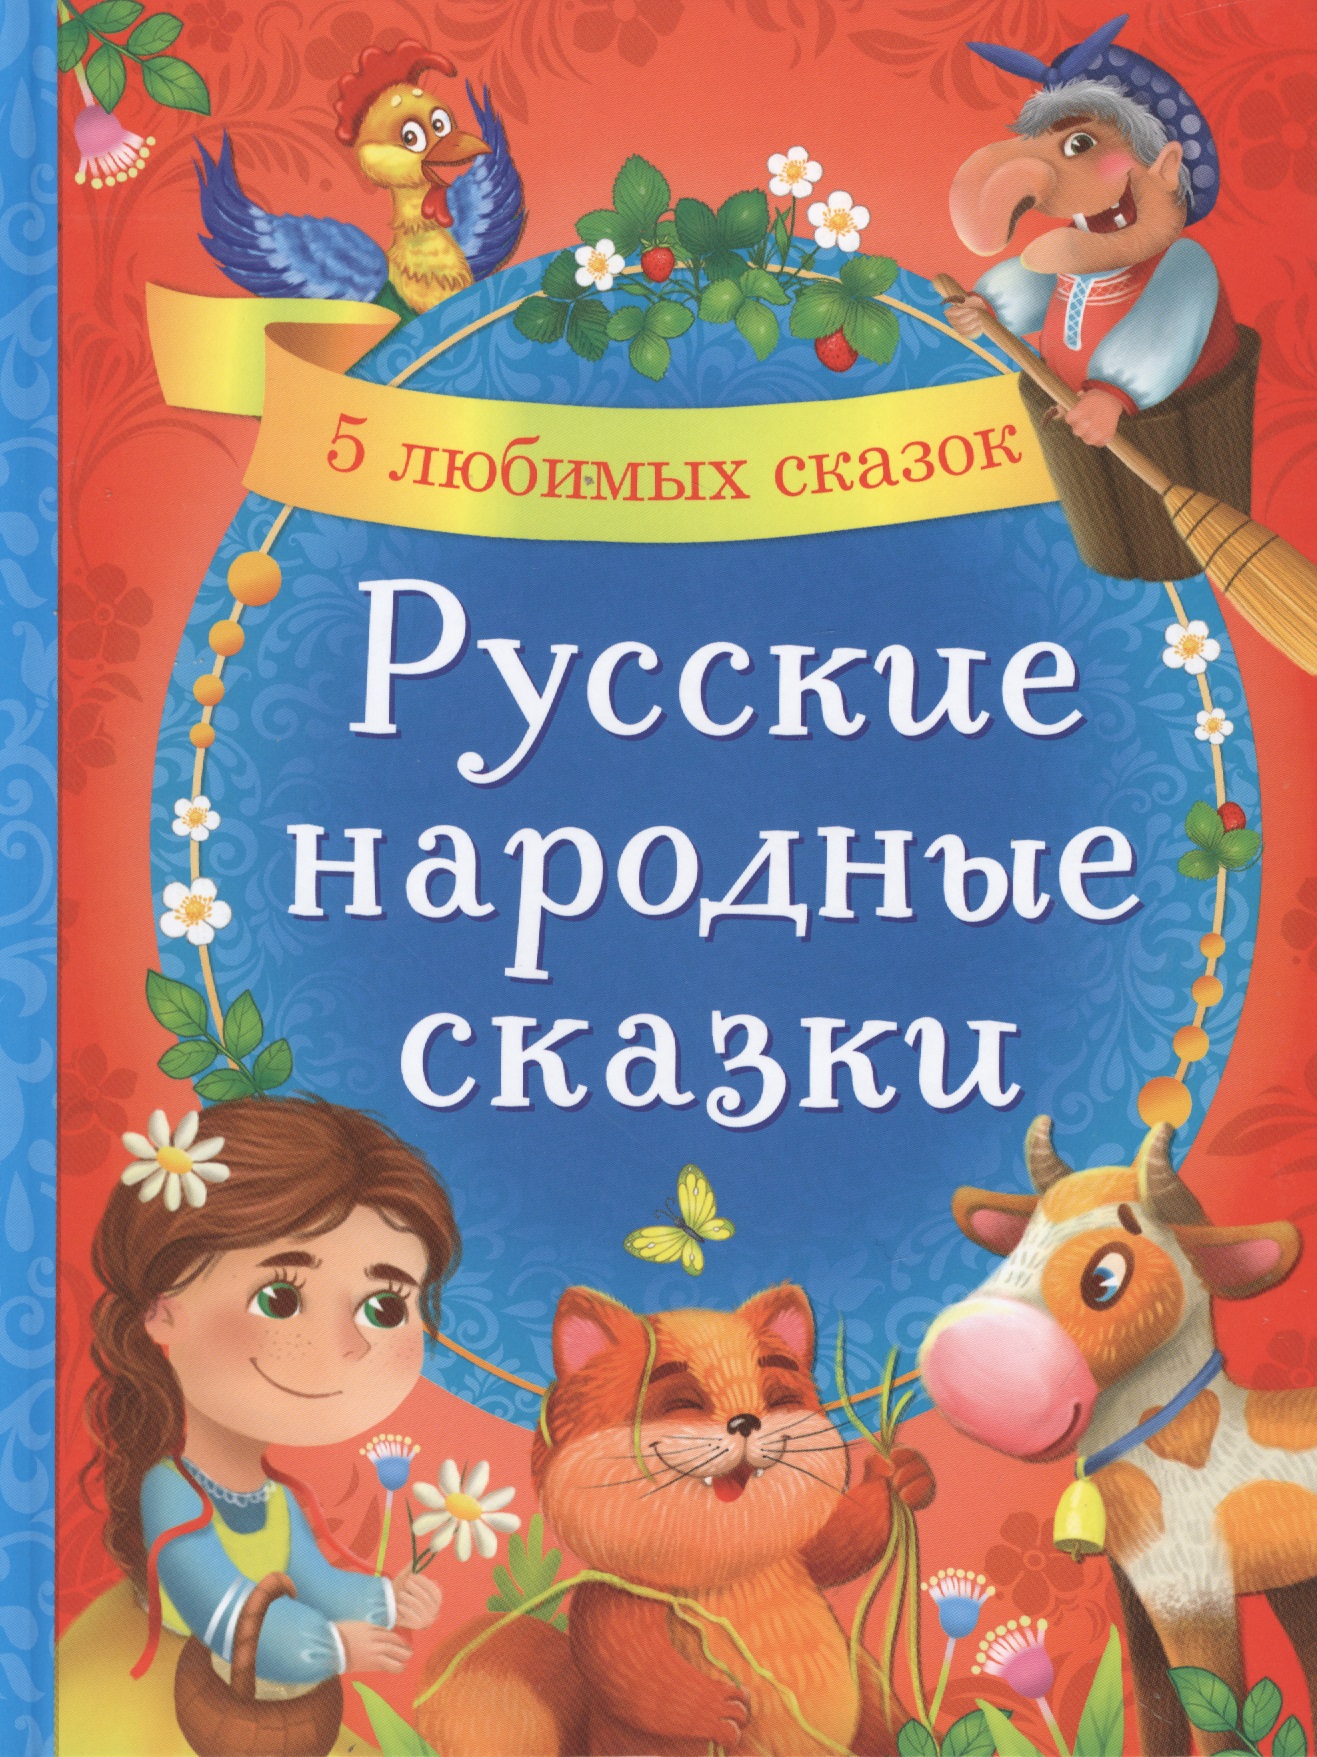 сказки для мальчиков 5 любимых сказок Русские народные сказки. 5 любимых сказок